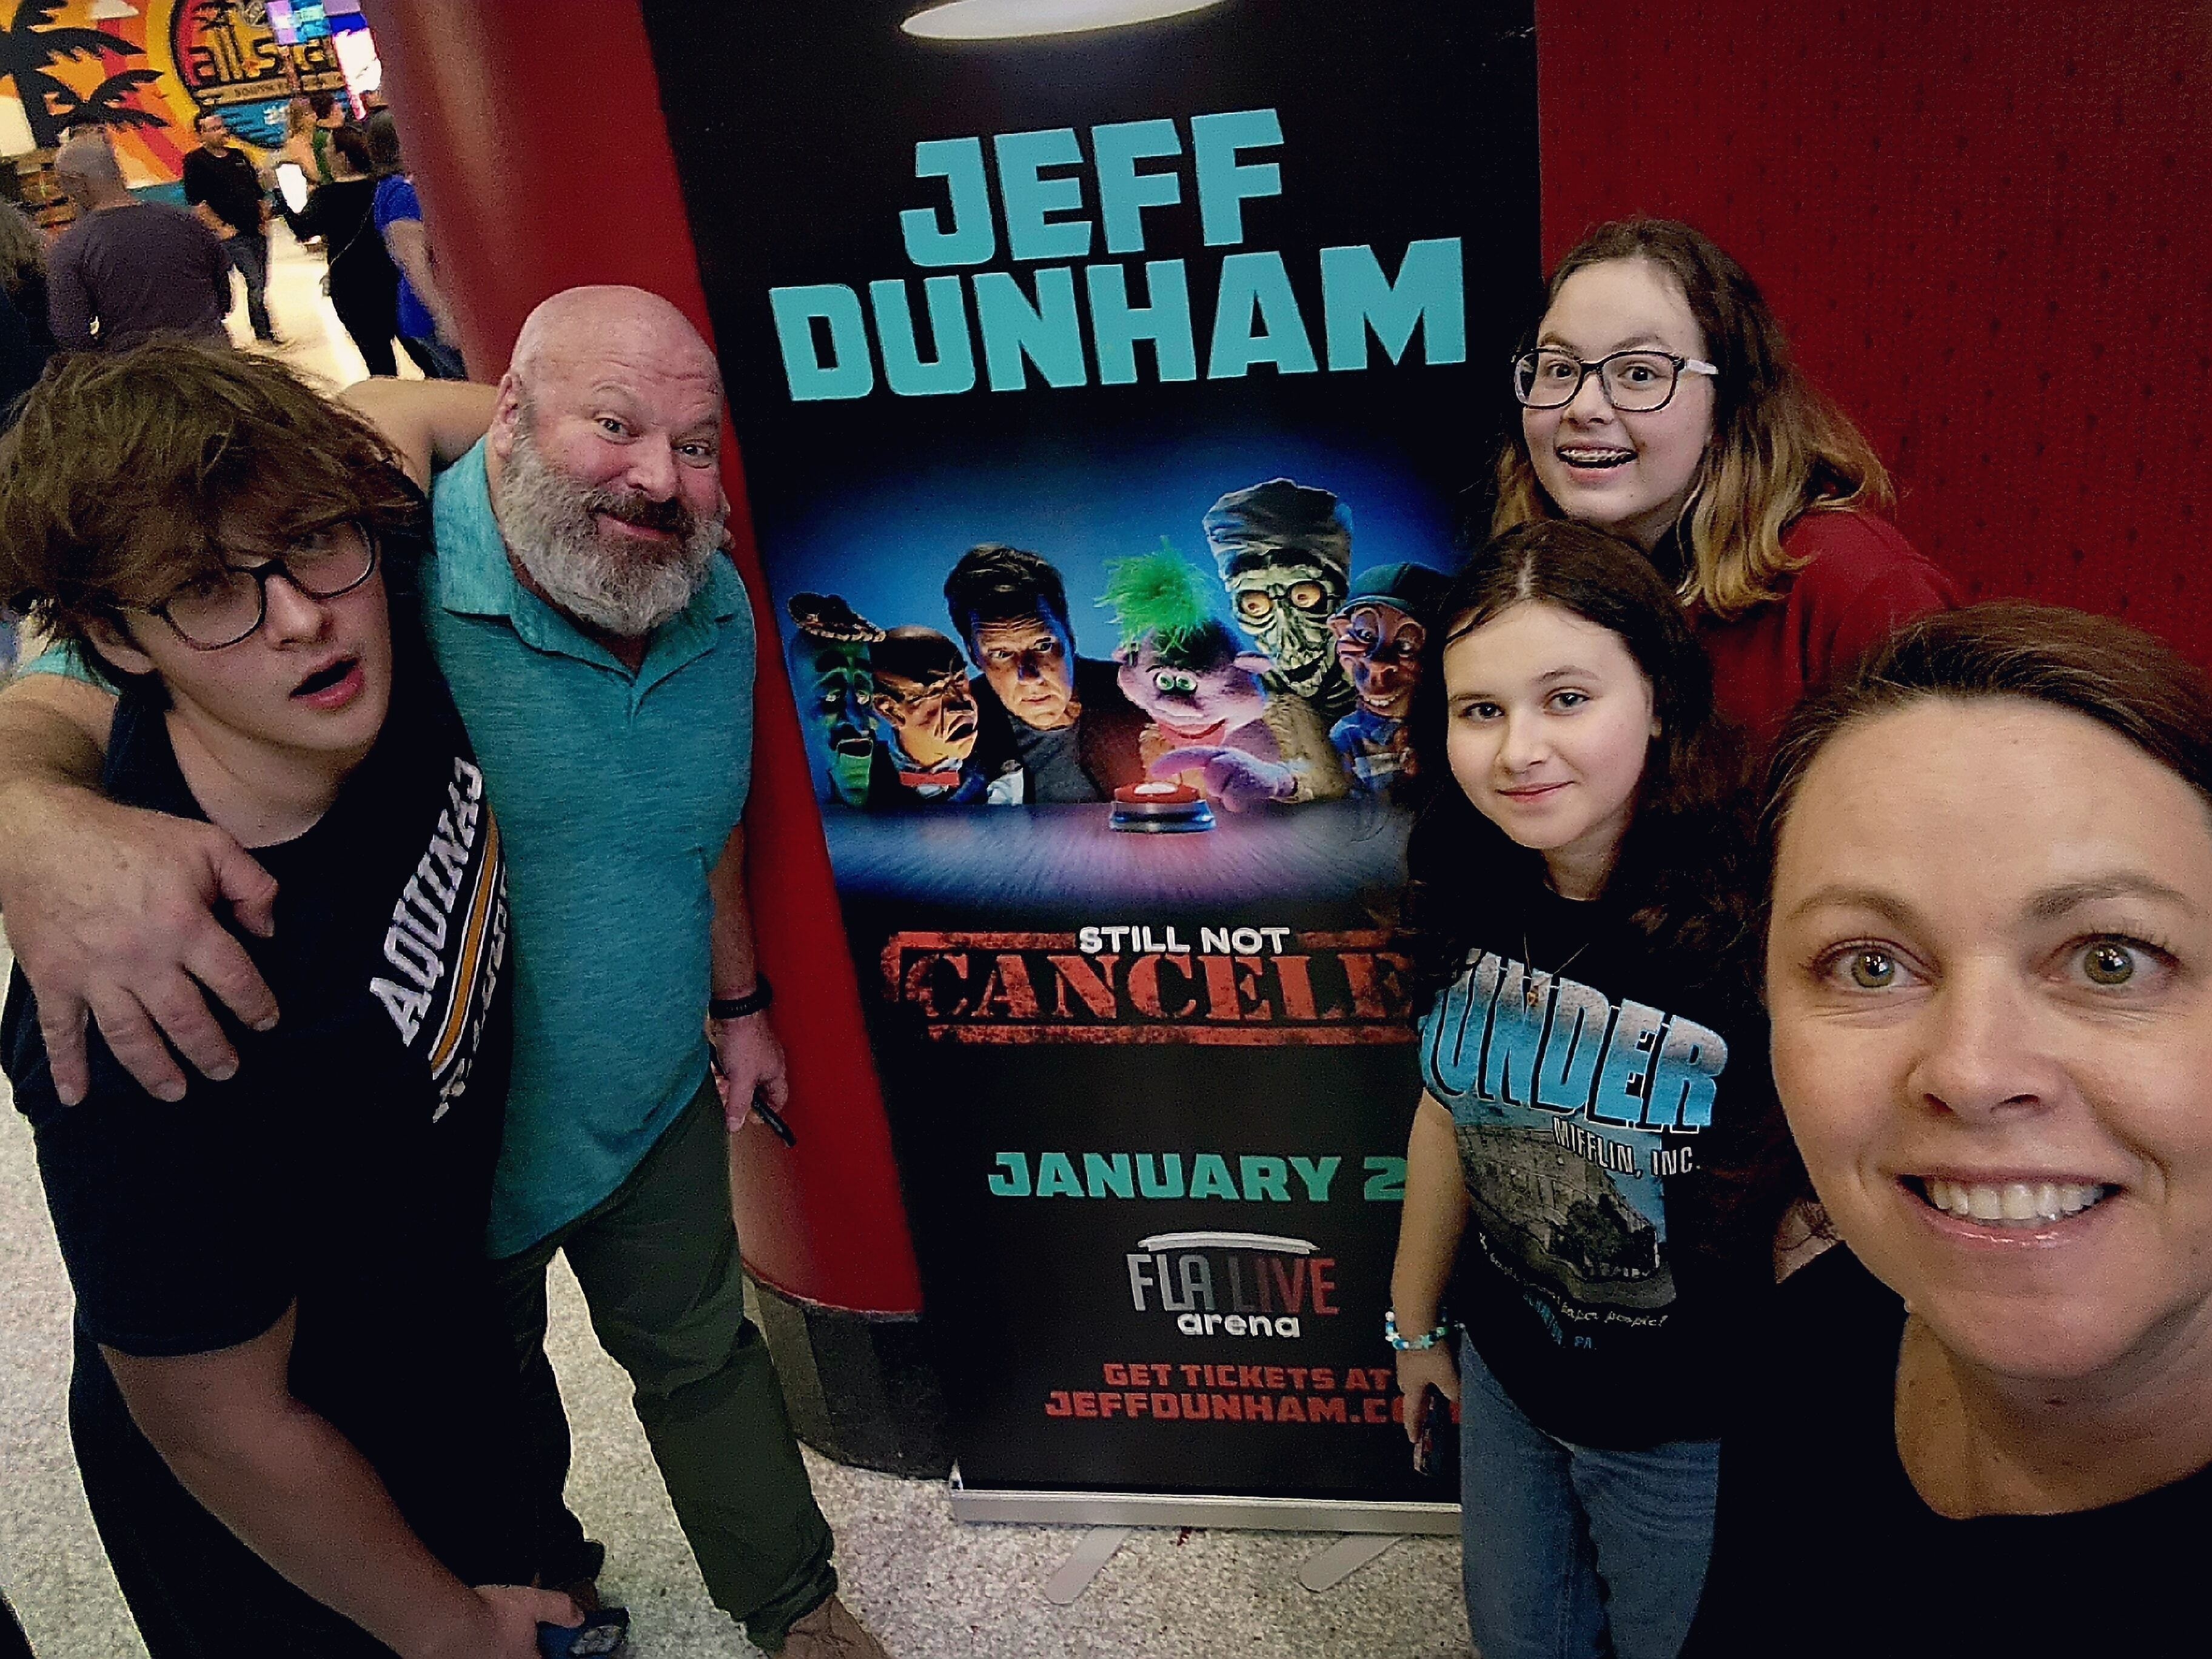 Jeff Dunham: Still not Canceled